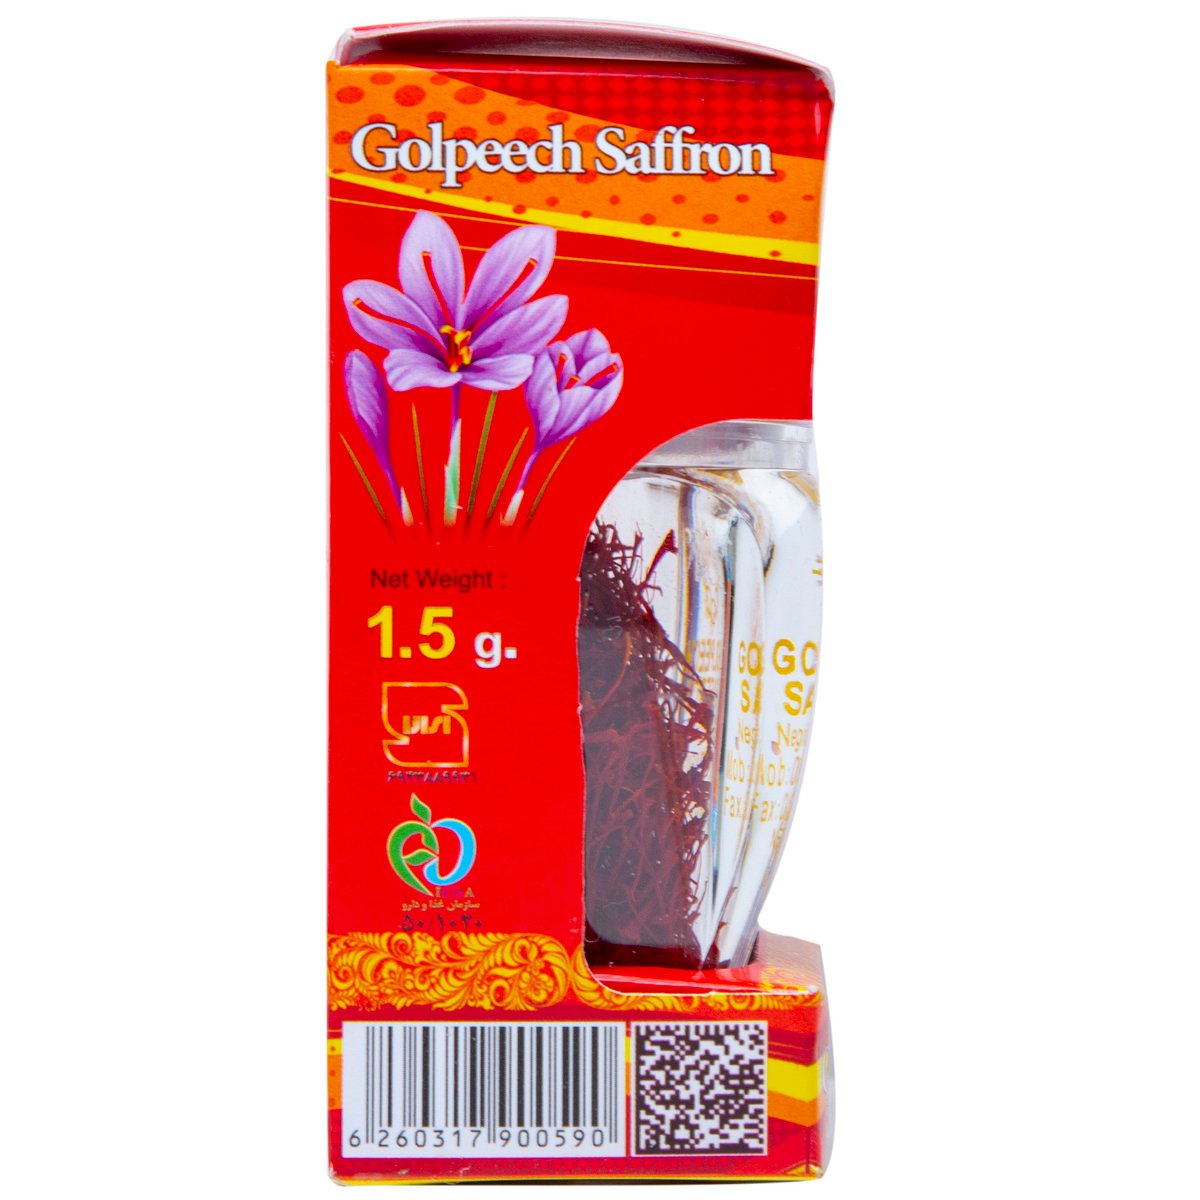 Golpeech Saffron 1.5 g